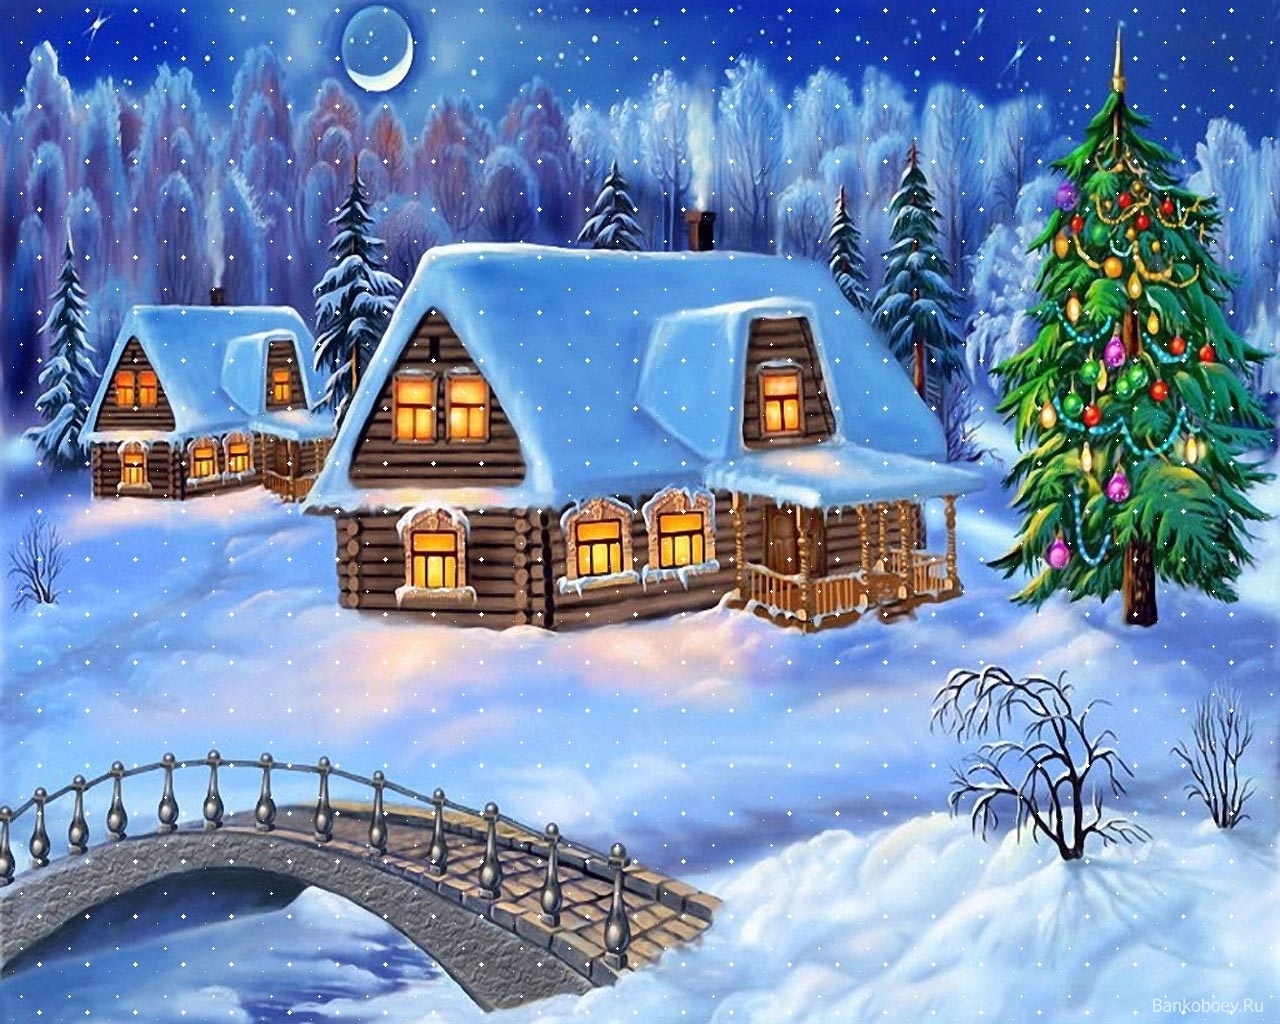 Mobile wallpaper pictures, winter, bridges, landscape, houses, night, snow, blue